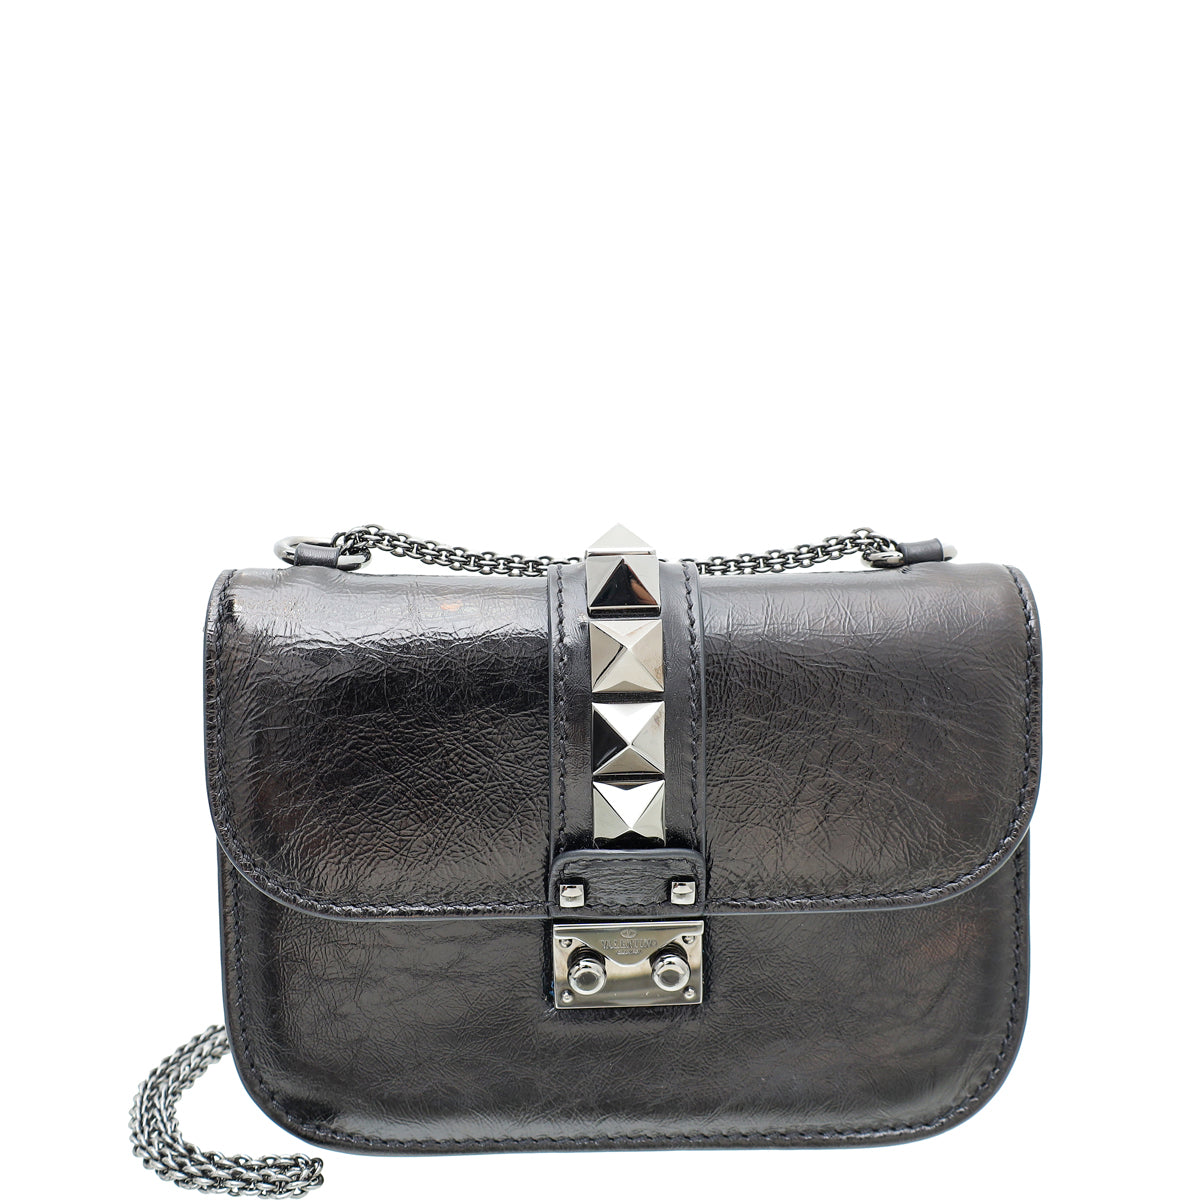 Valentino Rockstud Glam Lock Small Star Embellished Shoulder Bag